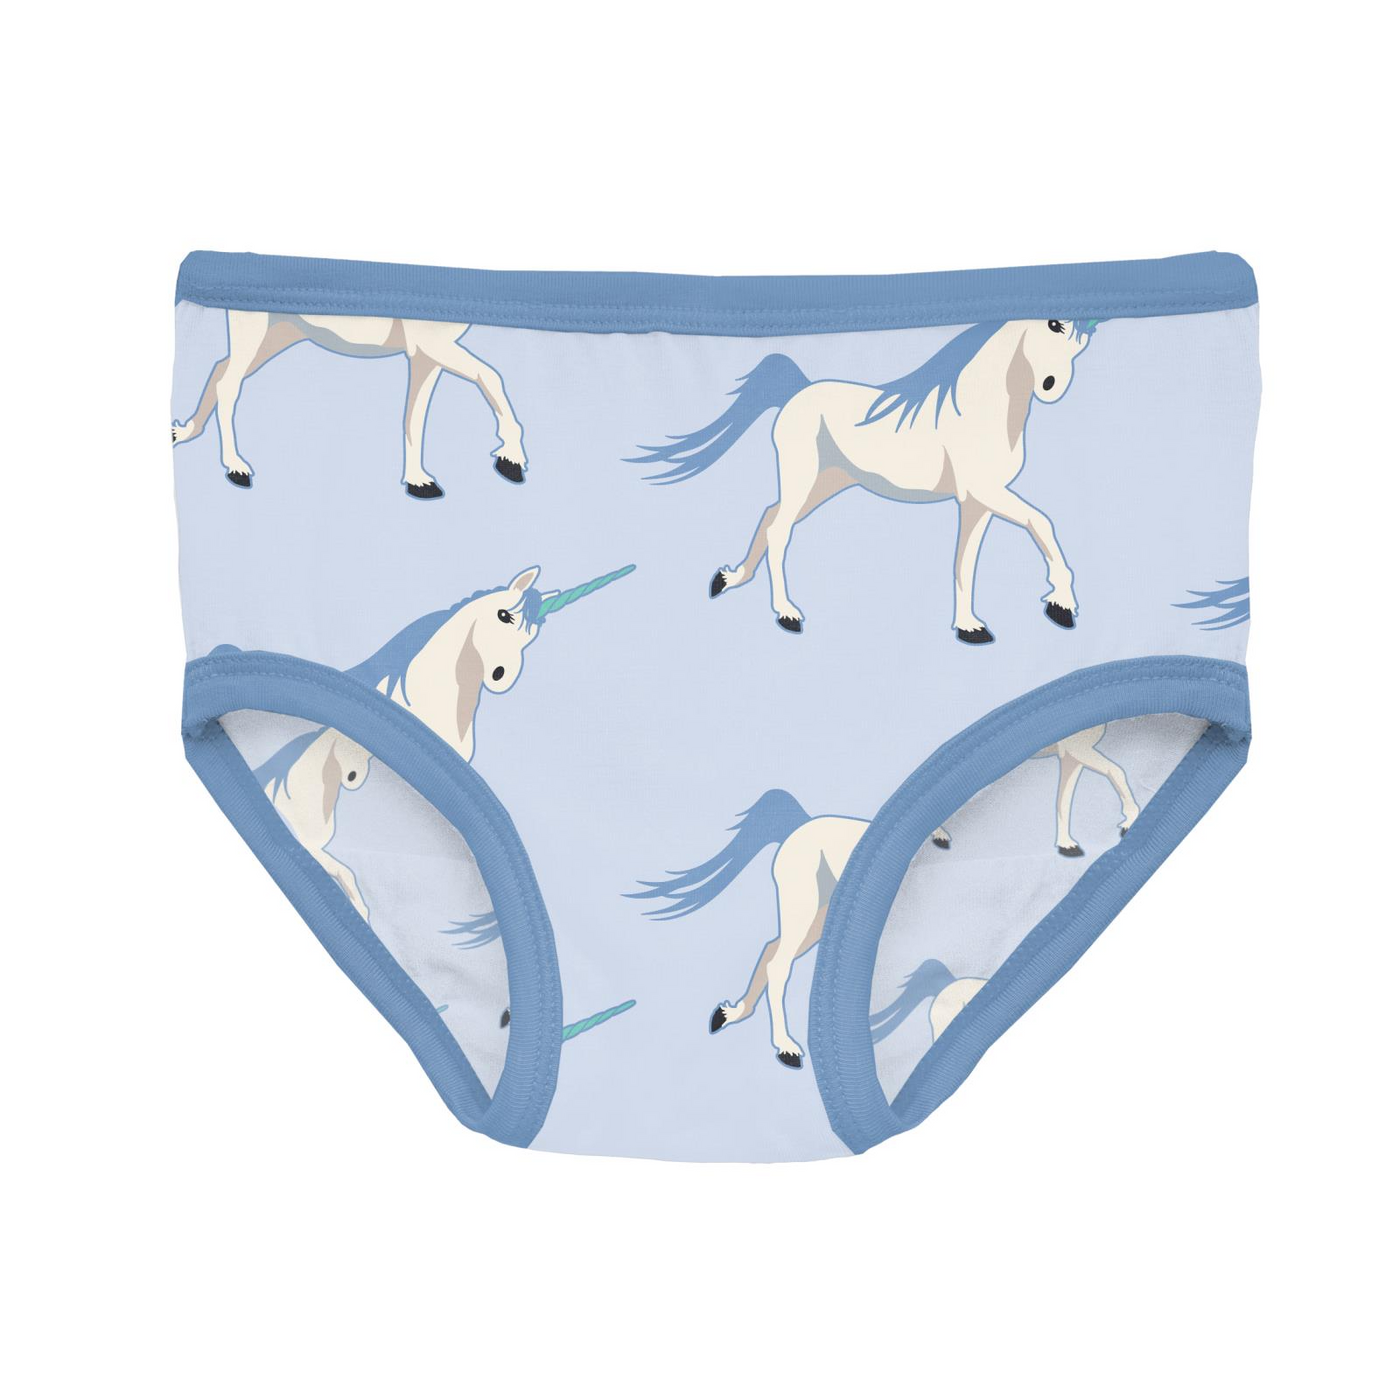 Print of the Week Kickee Pants Girl's Underwear: Dew Prancing Unicorn